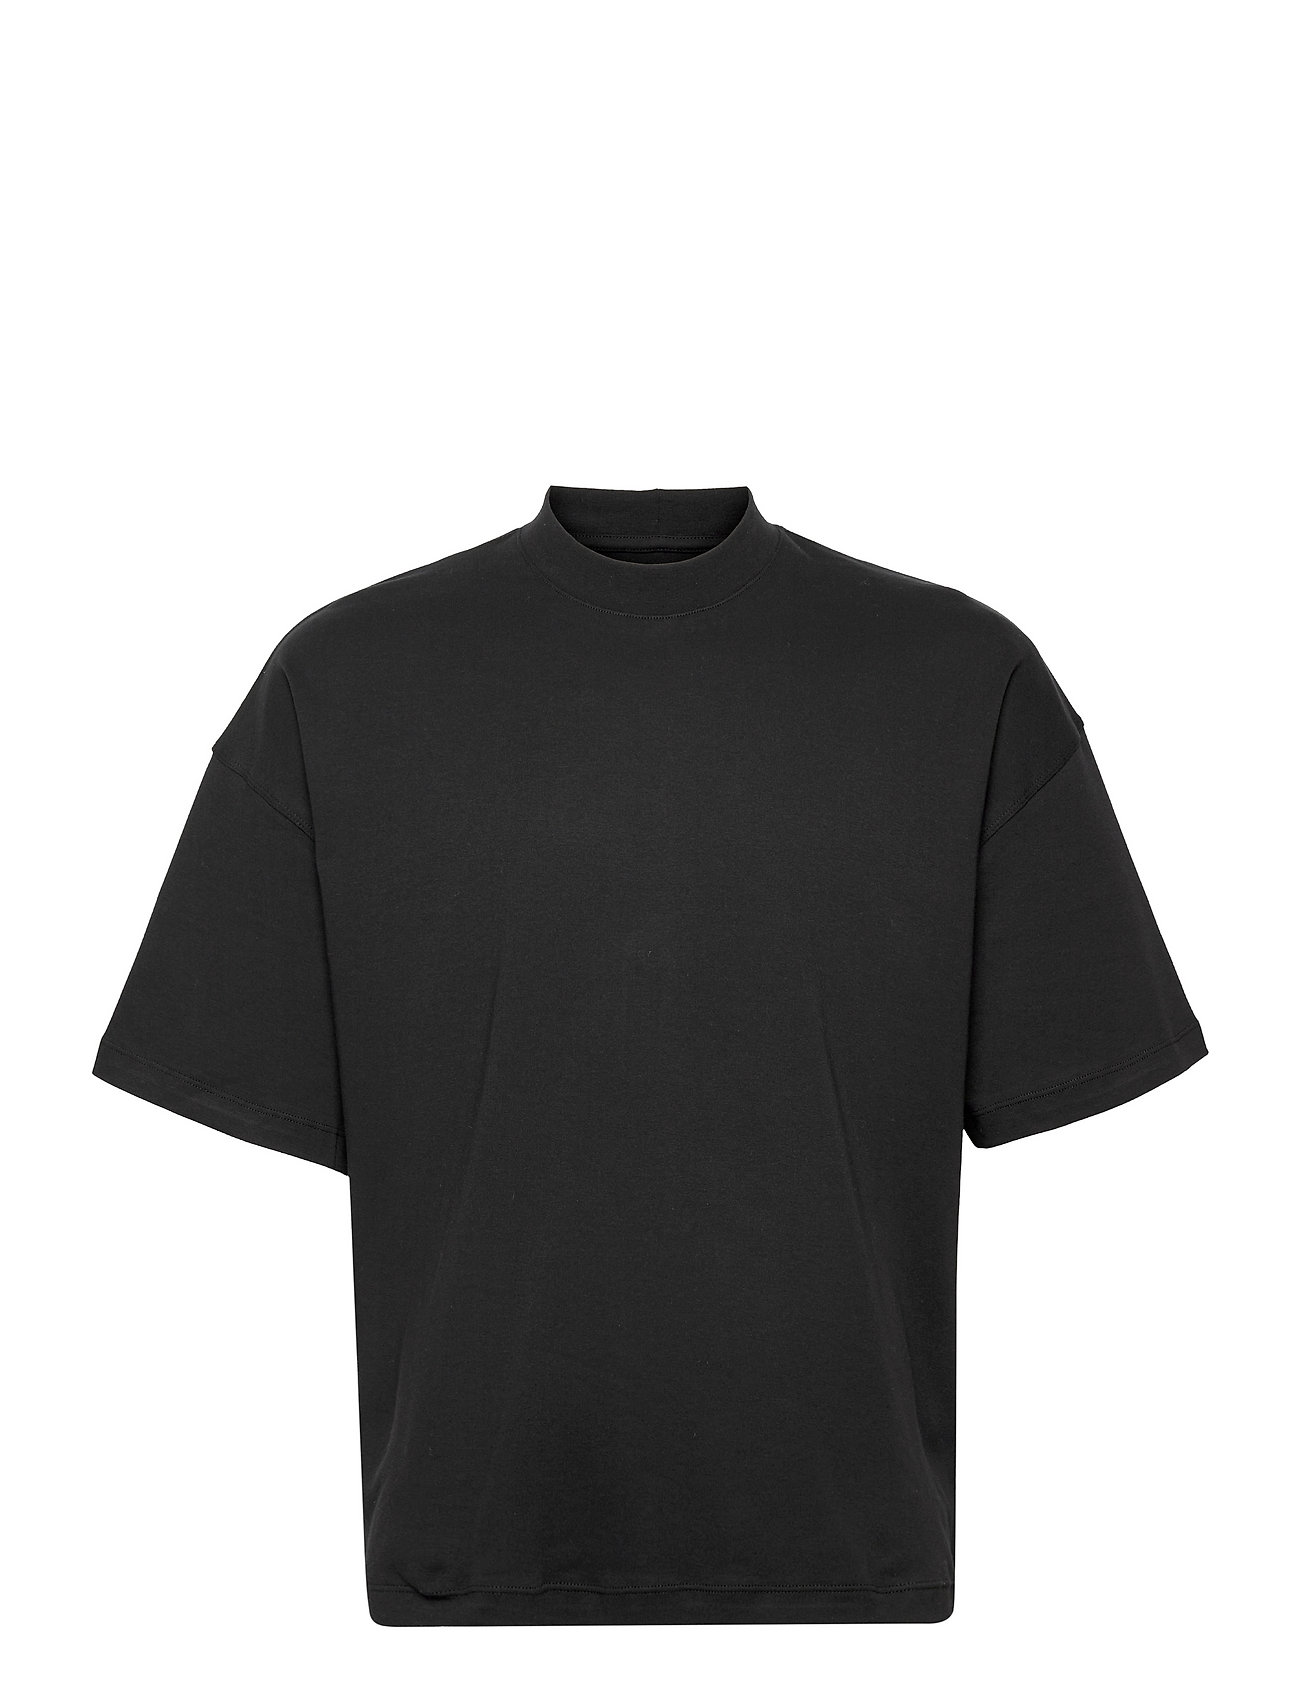 Samsøe Samsøe - Hamal t-shirt 11691 - basic t-shirts - black - 0